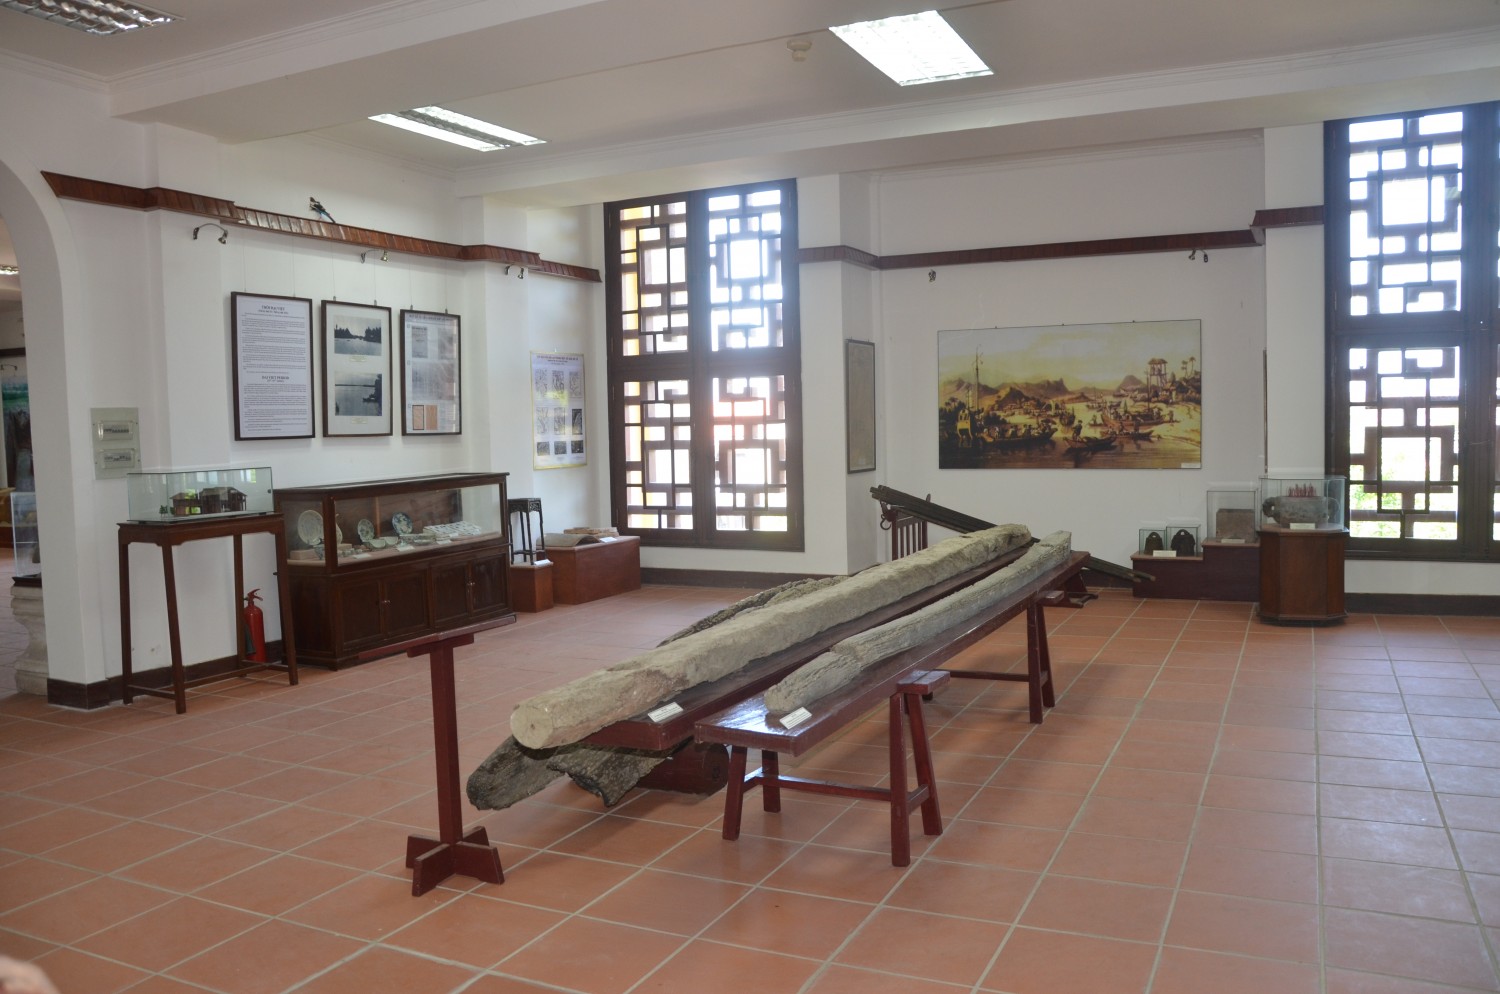 Bảo tàng lịch sử văn hóa Hội An - Minh chứng sống động của thương cảng phồn thịnh một thời 13